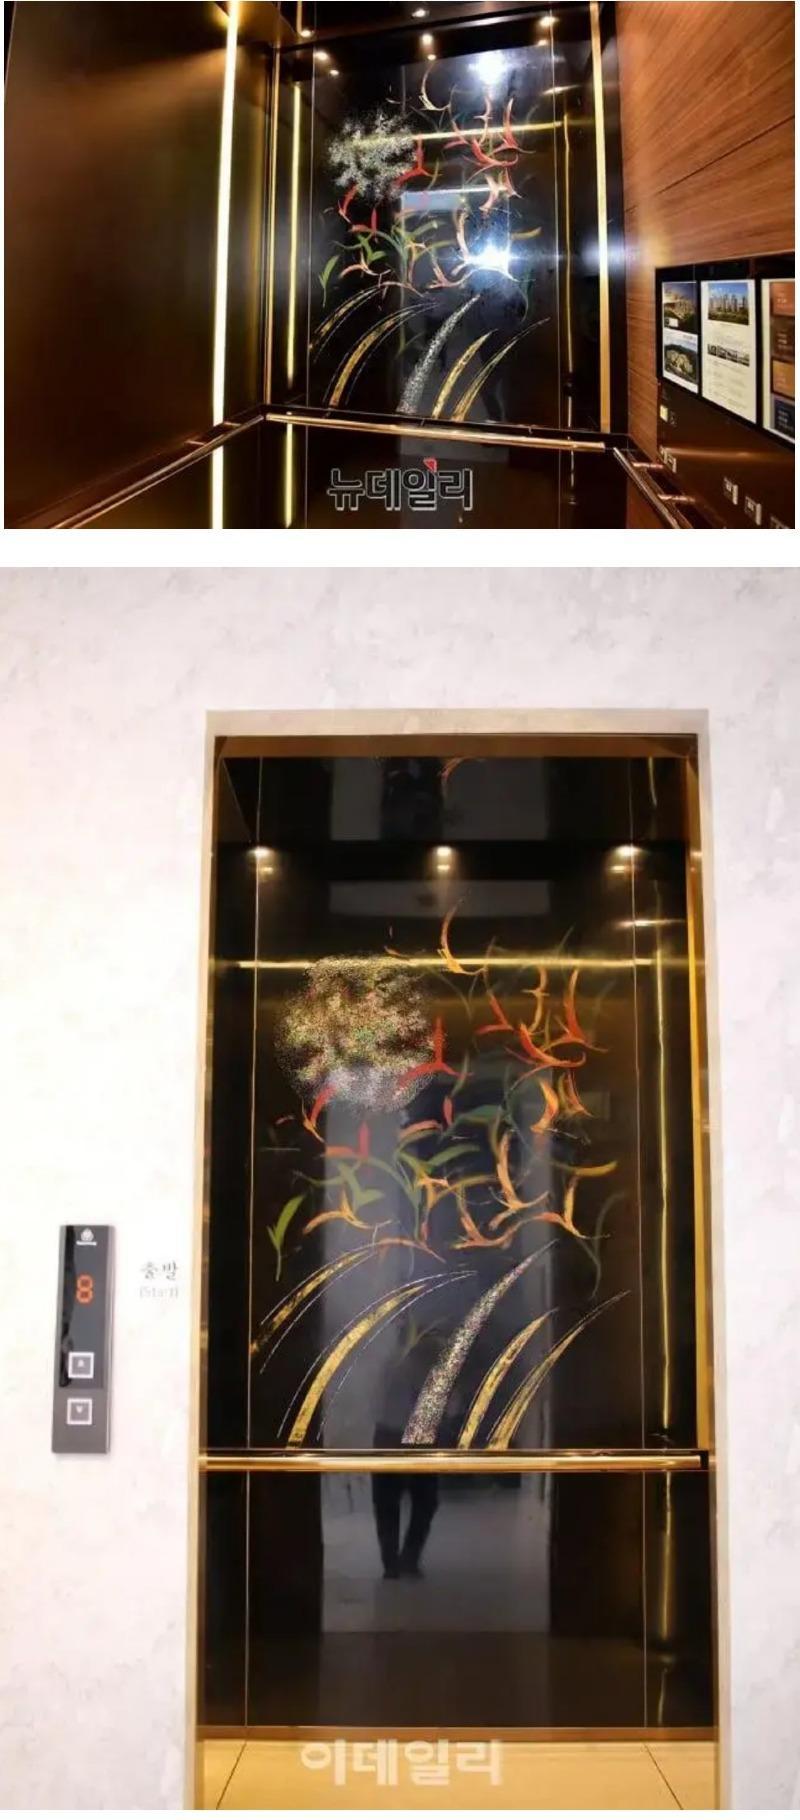 韓国の職人が作った螺鈿漆器エレベーター